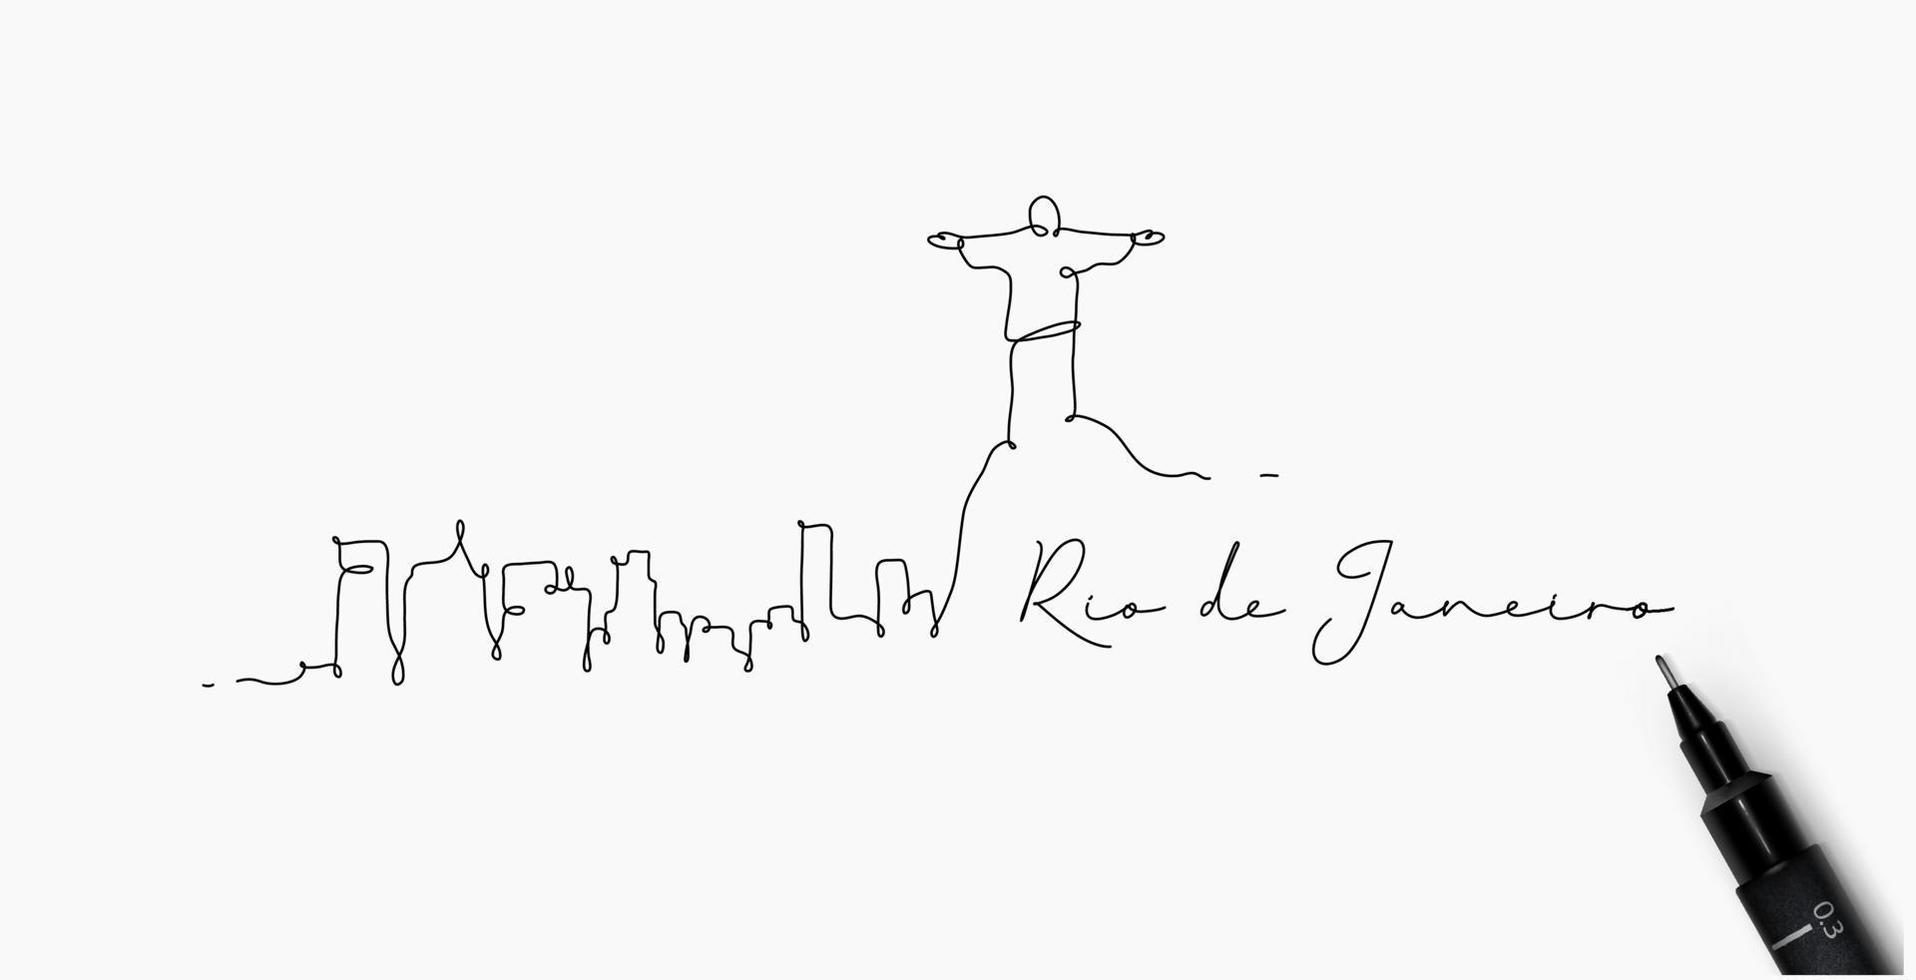 silhueta da cidade rio de janeiro em estilo de linha de caneta desenho com linhas pretas sobre fundo branco vetor